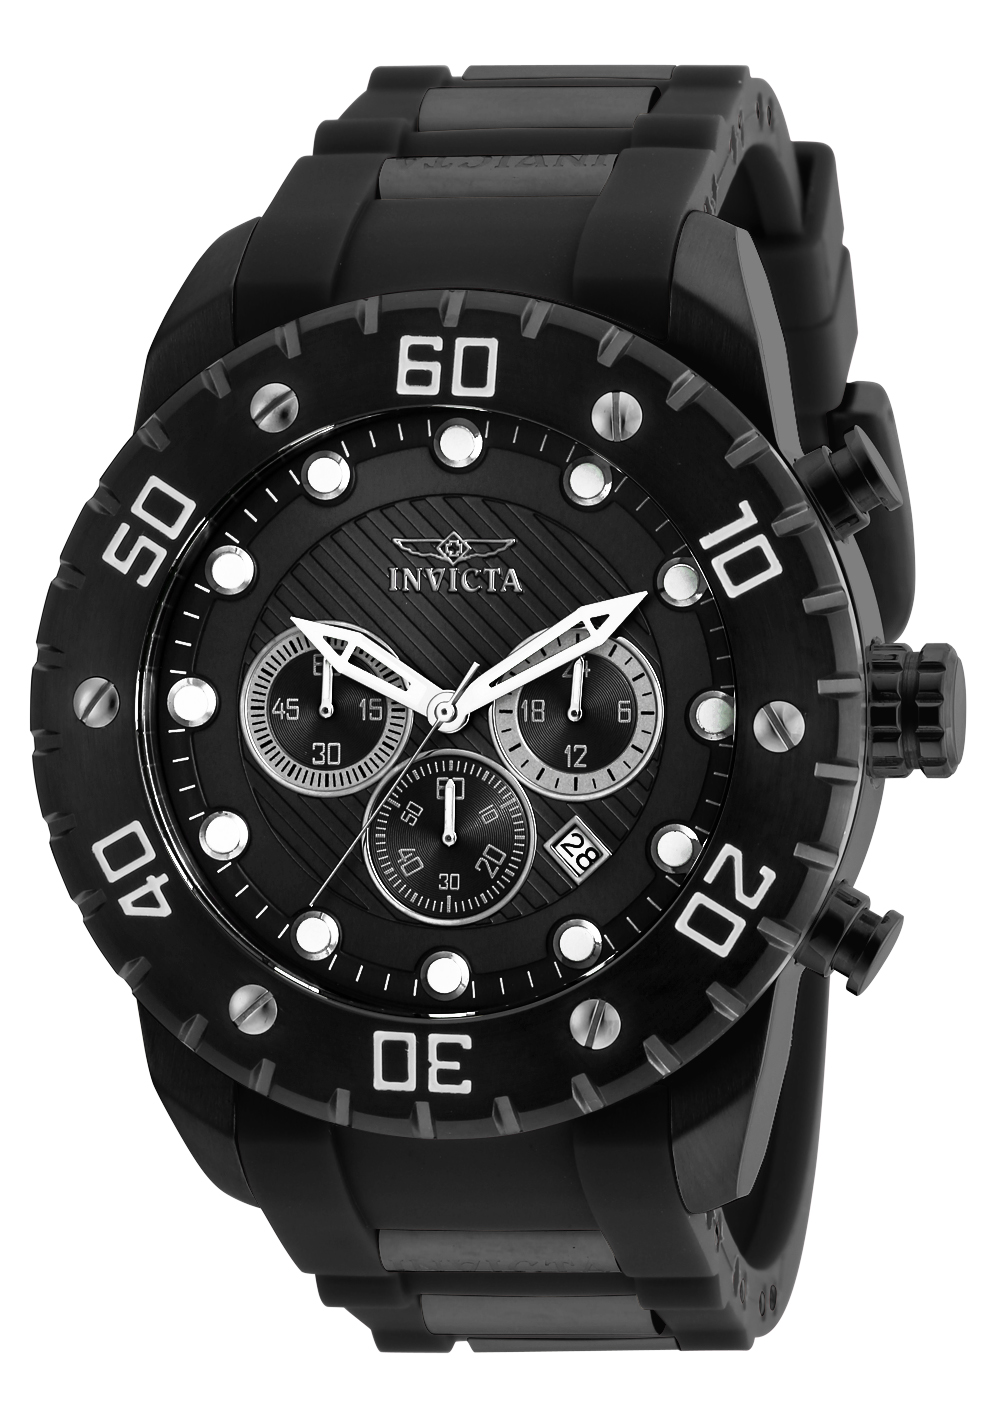 Invicta Pro Diver SCUBA Men's Watch - 50mm, Black (20283)